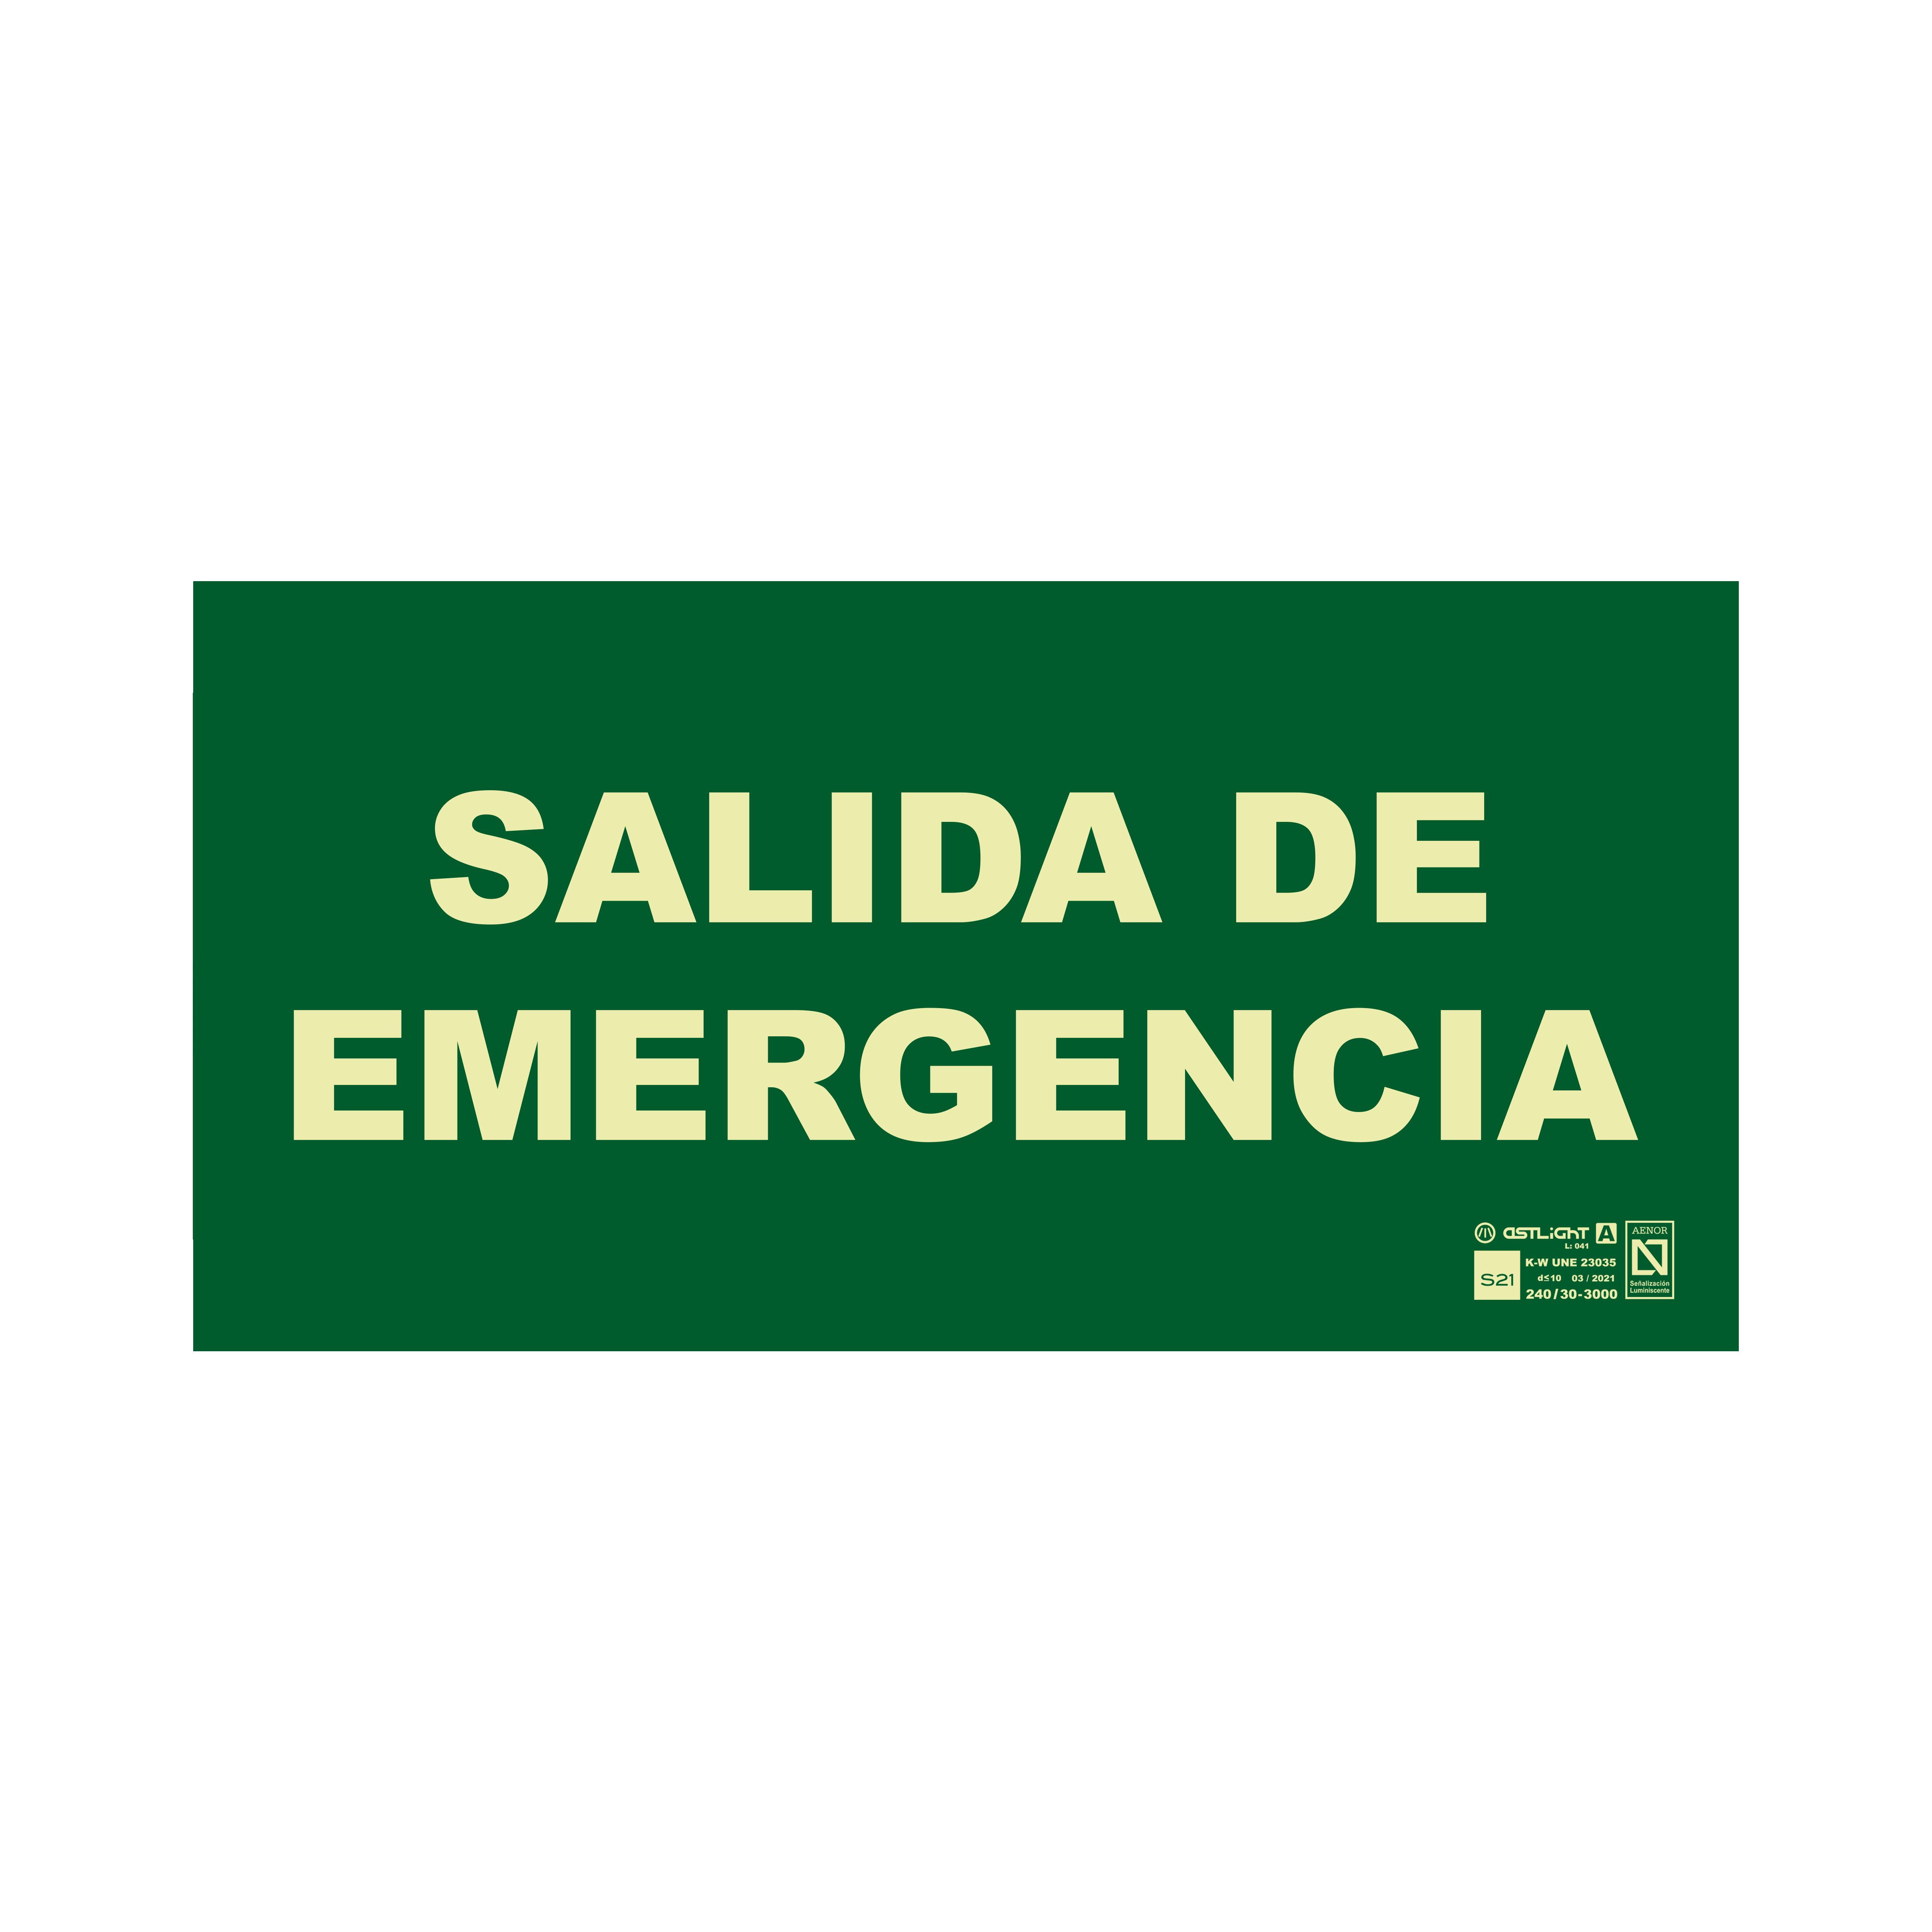 Señal de salida de emergencia Astlight, idioma: Español, texto: Salida De Emergencia